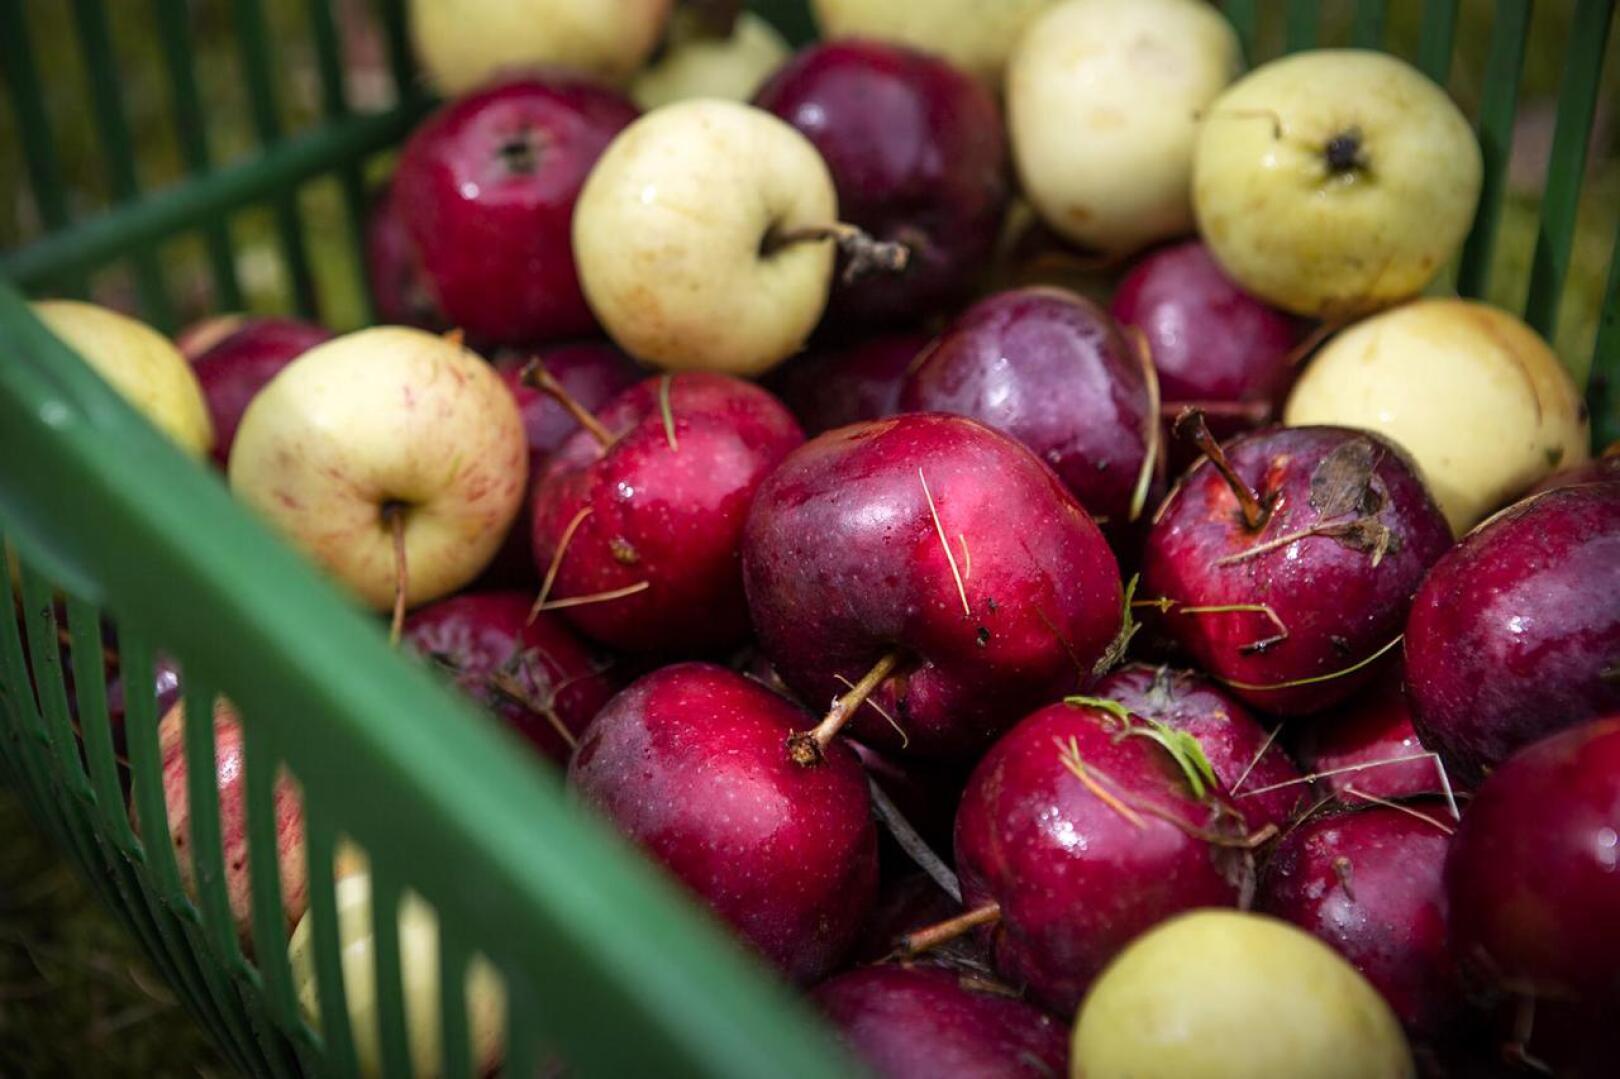 Hedelmät maistuvat rastaille, joten esimerkiksi omenoiden tarjoamista kannattaa kokeilla.